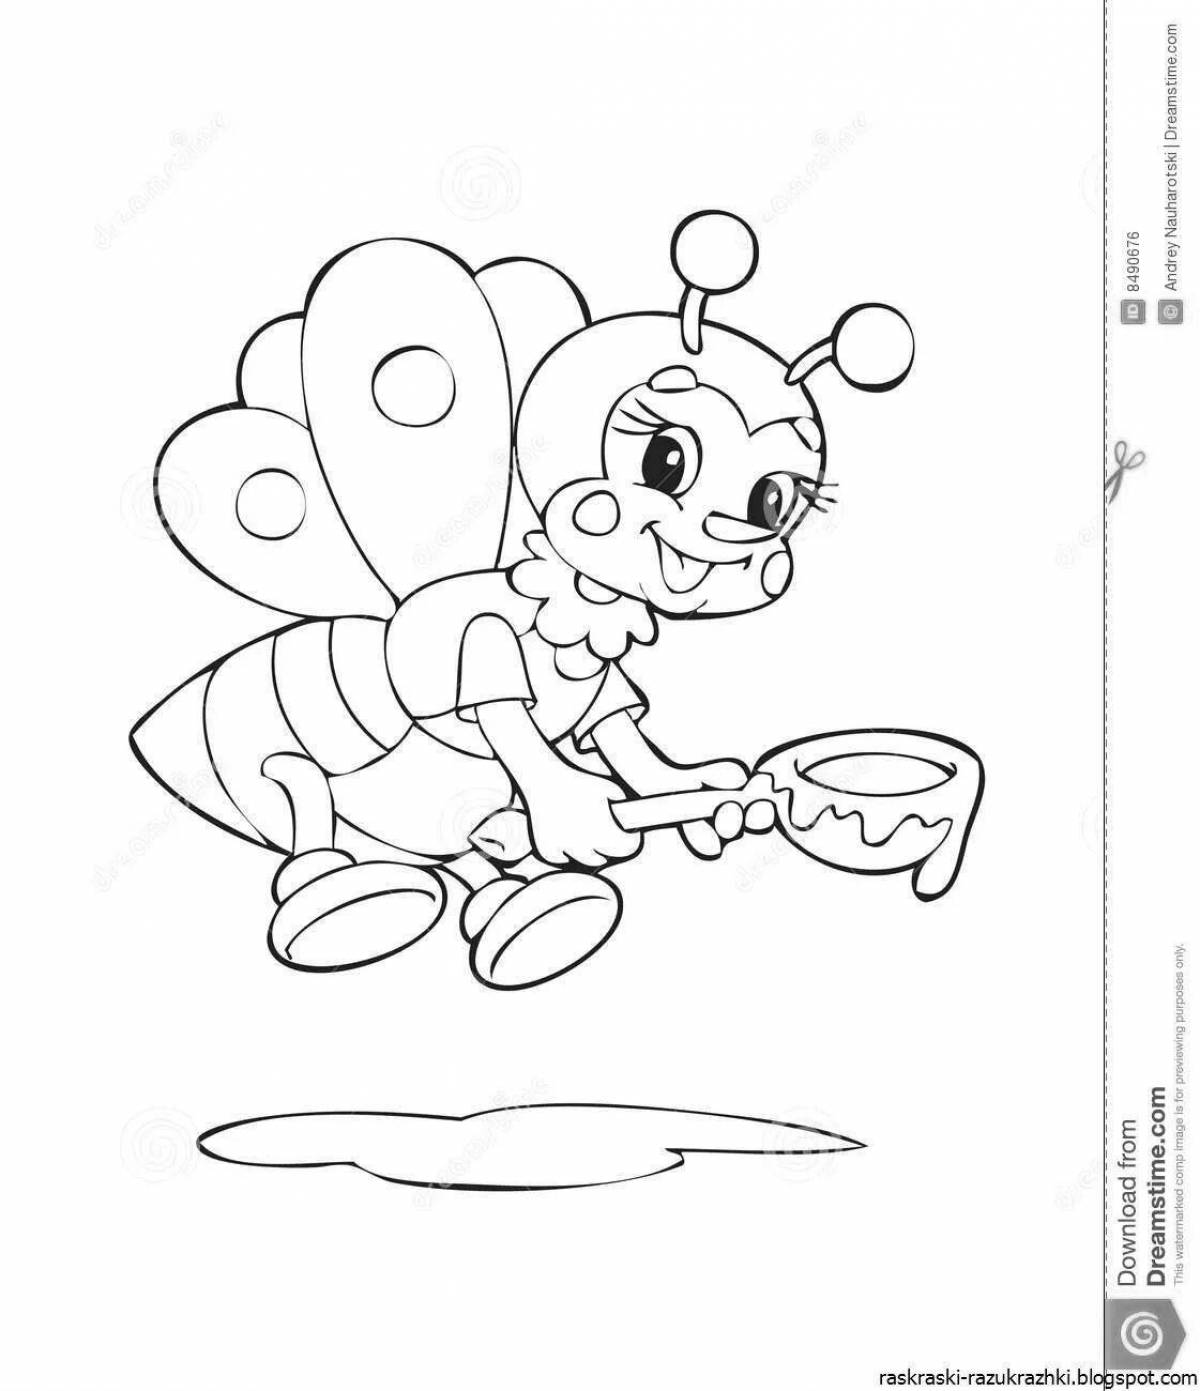 Пчелка раскраска распечатать. Пчелка раскраска. Раскраска пчёлка для детей. Пчелка раскраска для малышей. Пчела раскраска для детей.